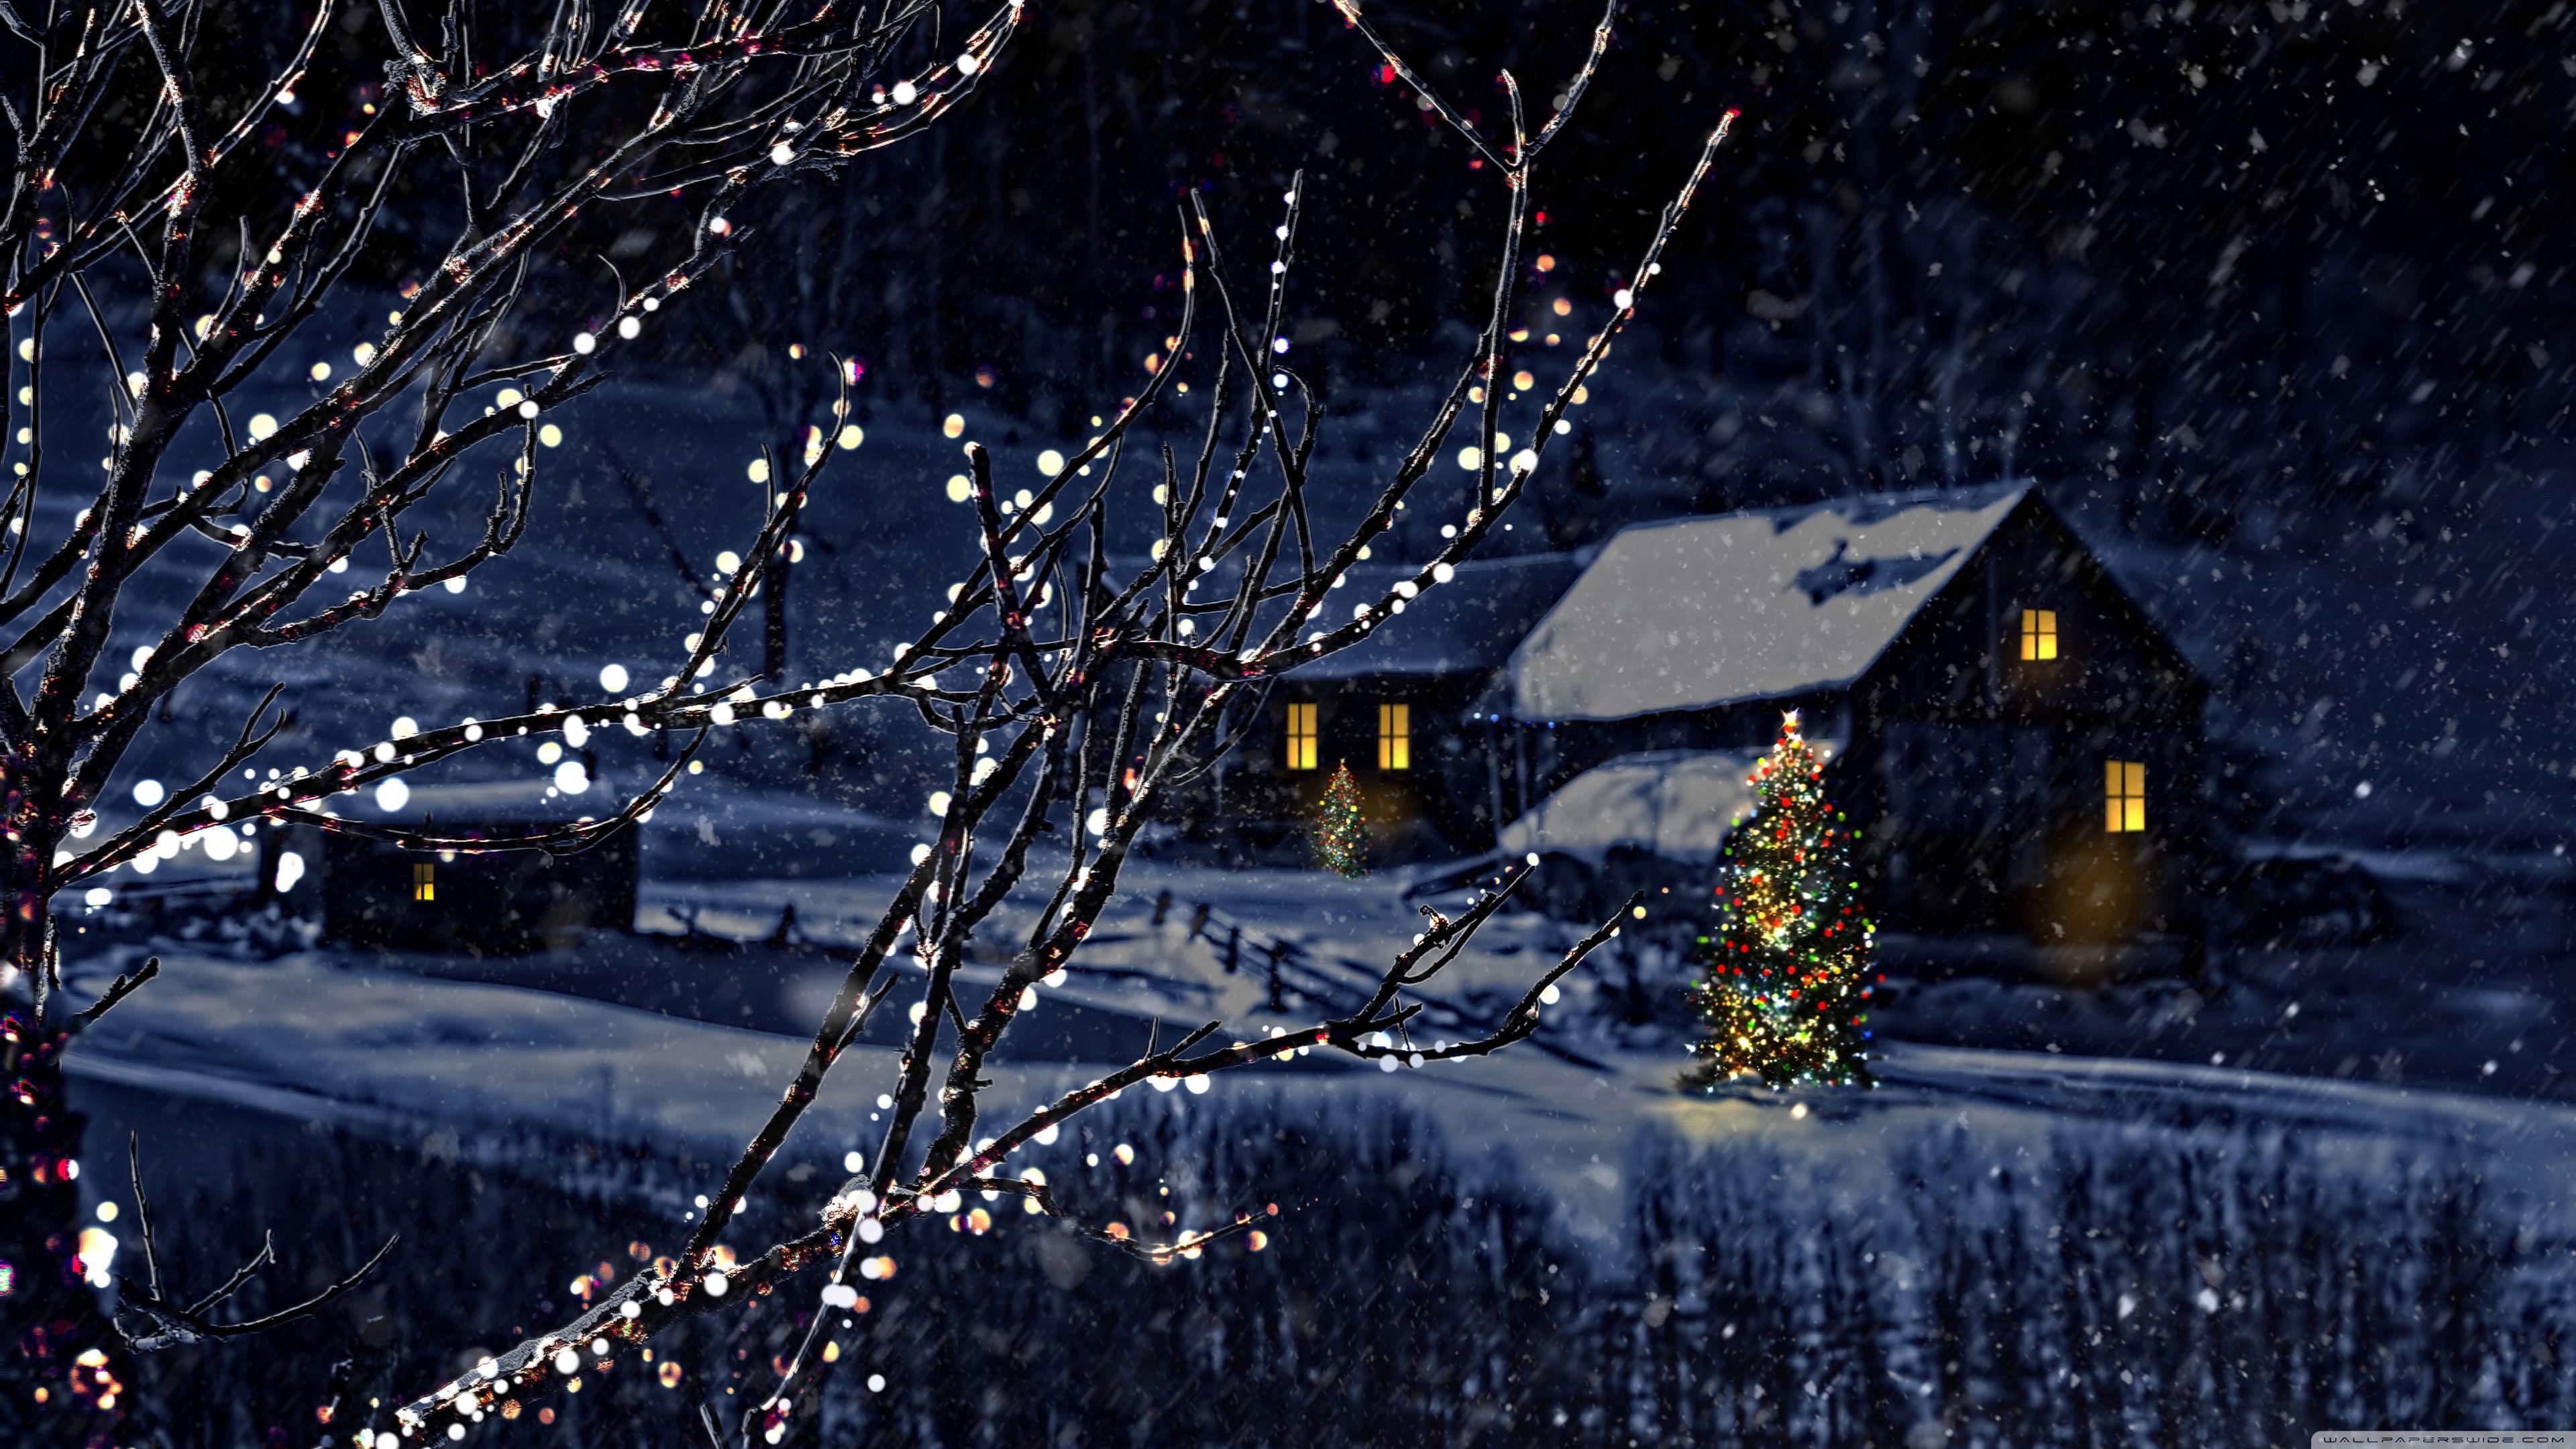 Hãy tận hưởng Giáng sinh này với những hình ảnh đẹp nhất, hoàn toàn miễn phí với những bức hình nền đầy màu sắc và nét rõ nét ràng. Những tài nguyên miễn phí như vậy sẽ giúp bạn tiết kiệm chi phí và tăng cường trải nghiệm Giáng sinh của bạn, hãy tải xuống ngay để được trải nghiệm nhé!